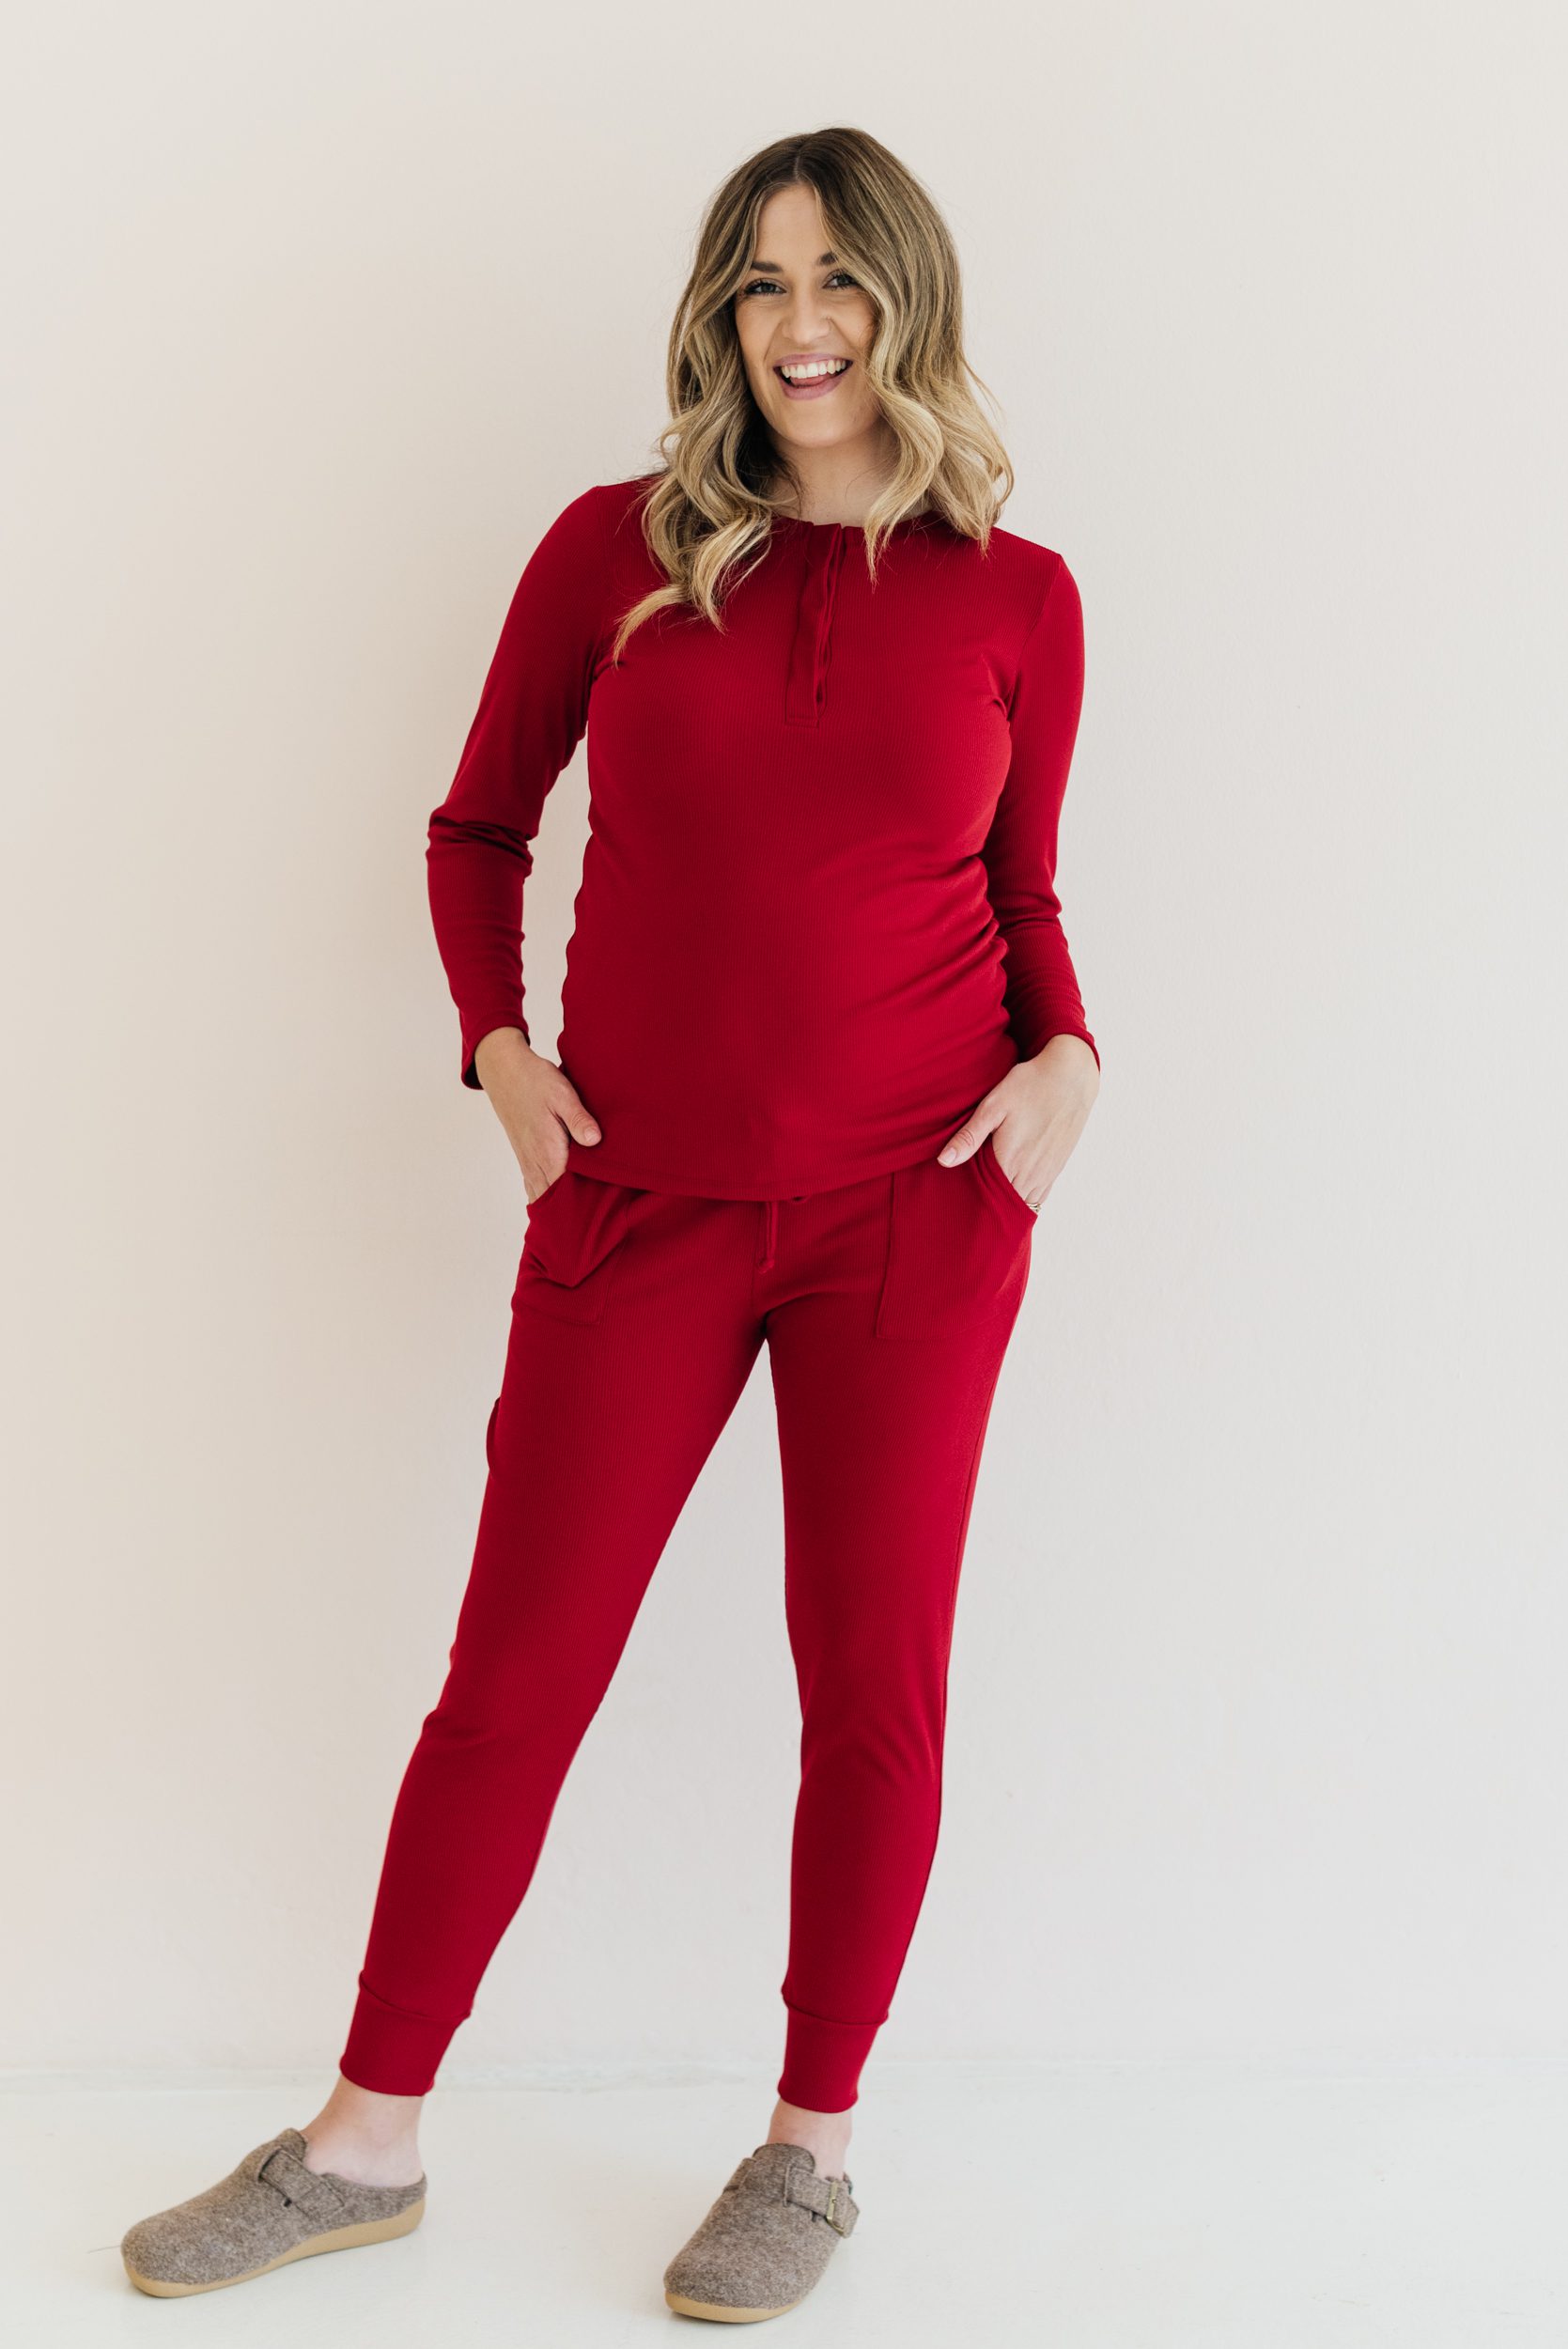 Buy Ribbed Cotton Joggers Maroon - Momsy Maternity, Nursing, & Womenswear